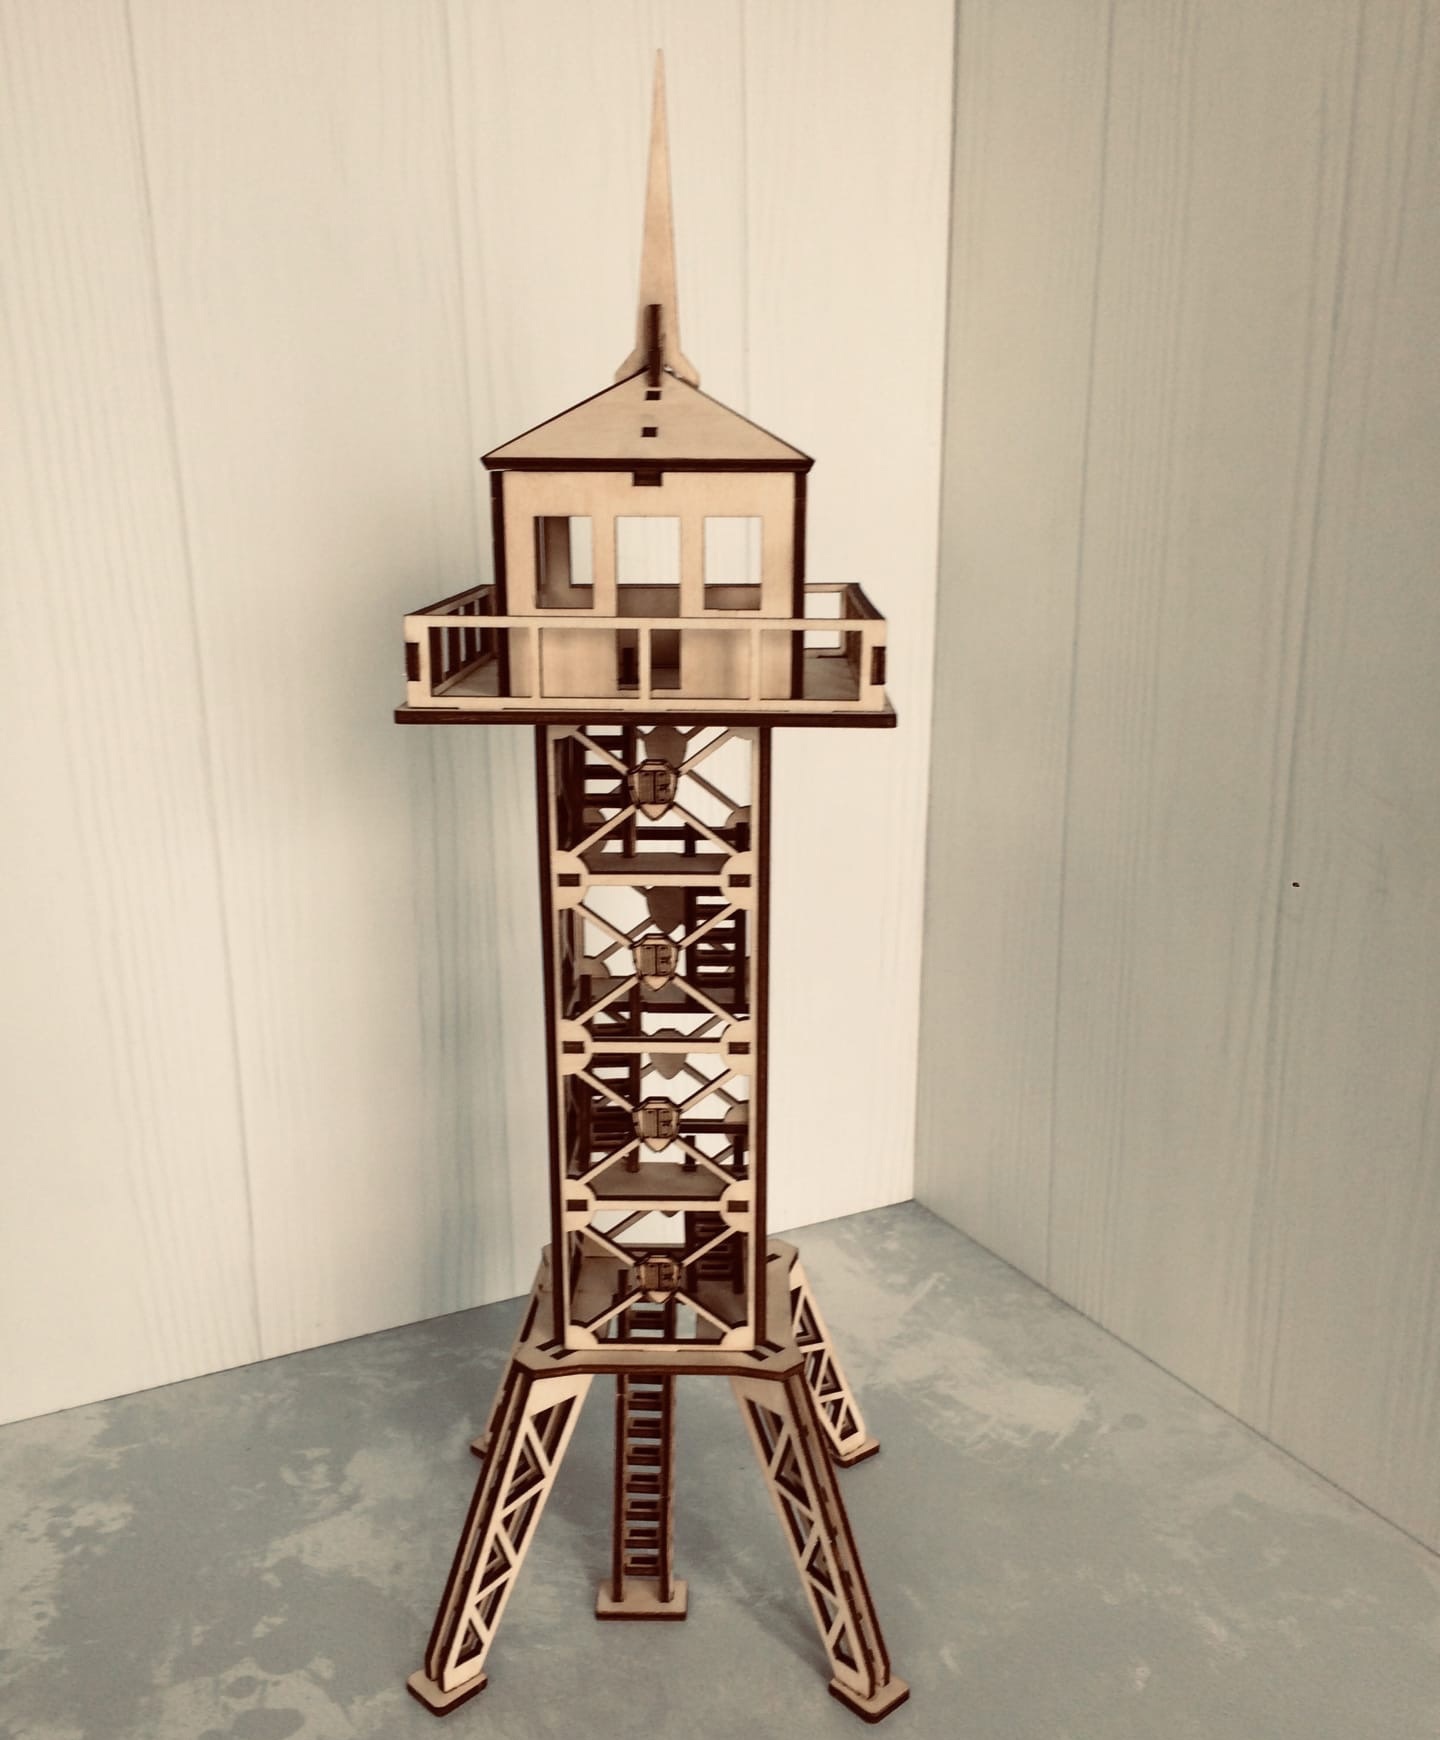 激光切割军事观察塔 3d 木制模型